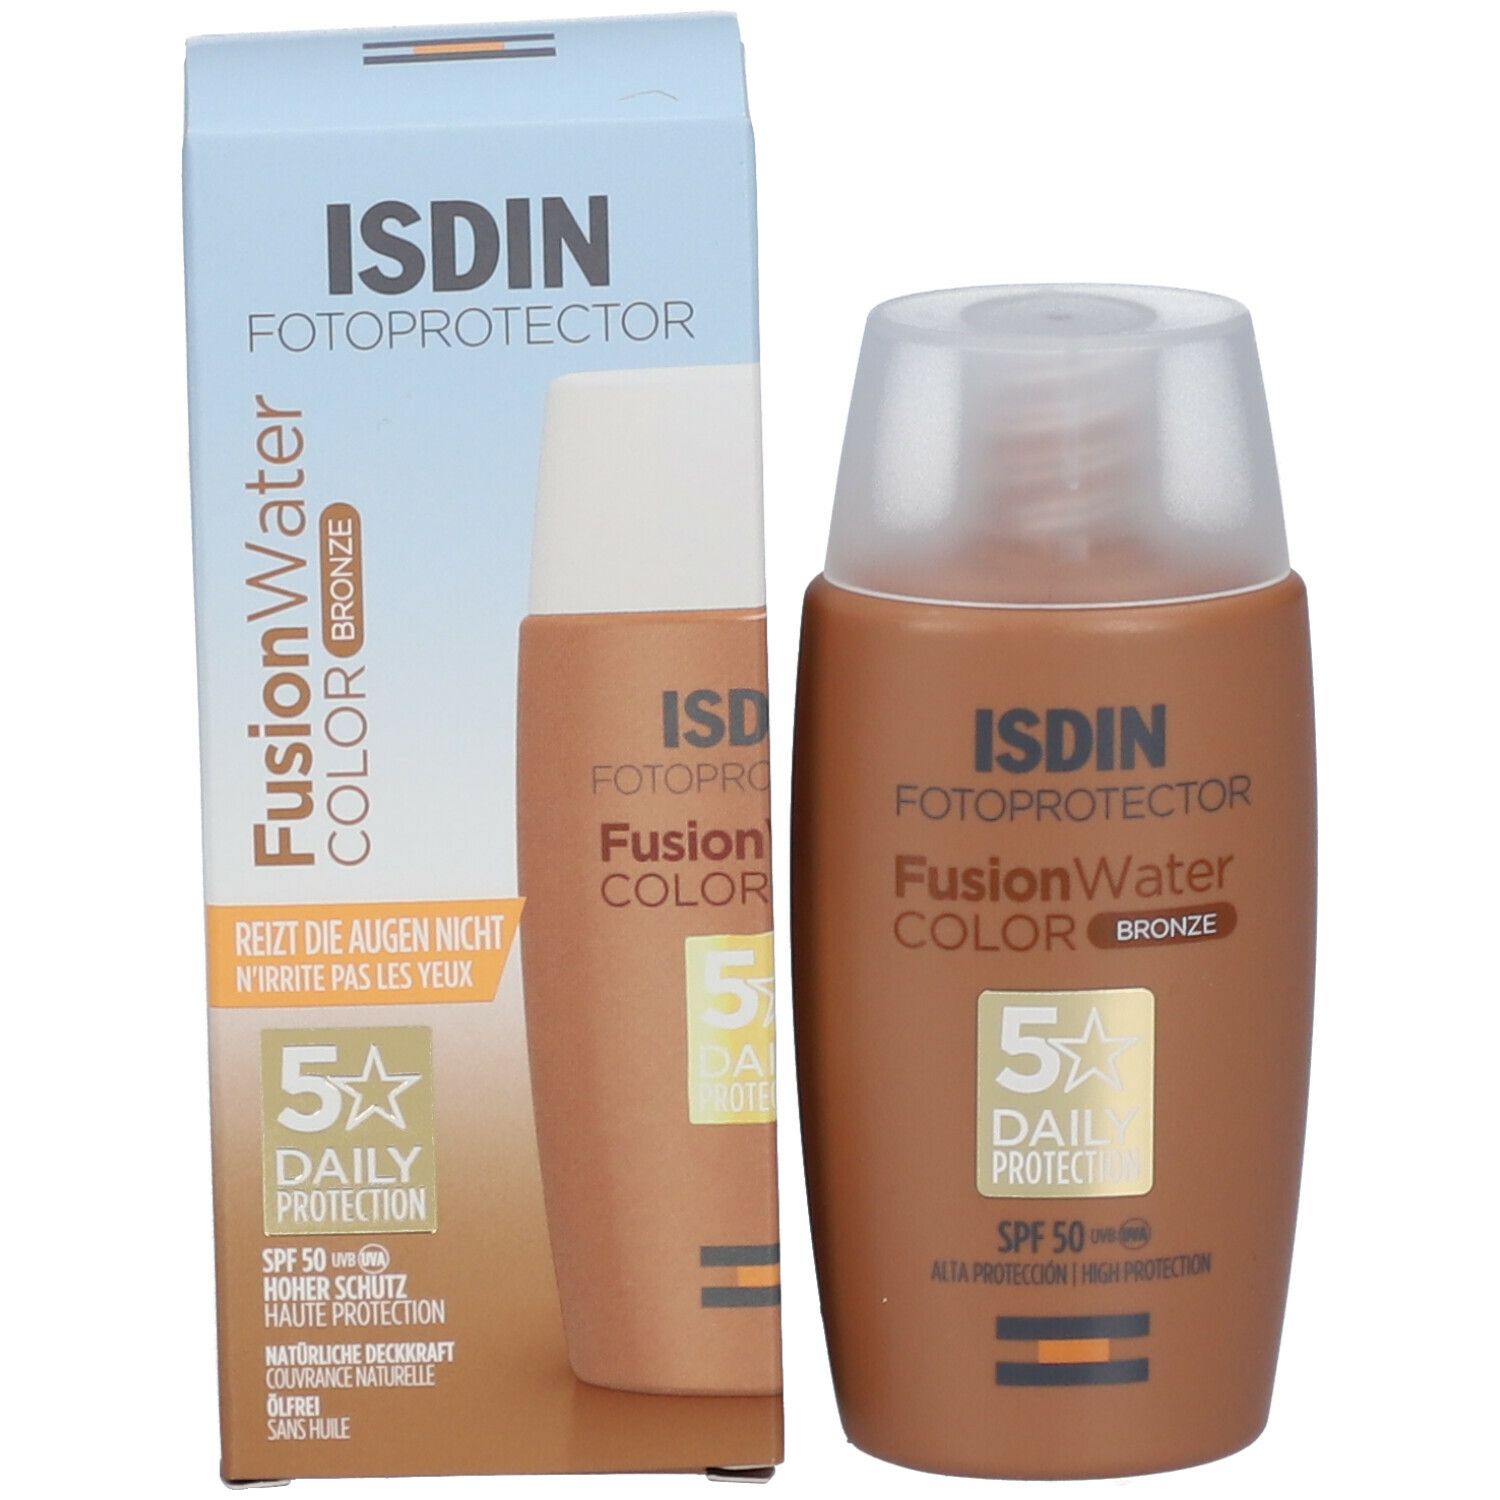 Fotoprotector ISDIN Fusion Water Color Bronze LSF 50 ultraleichte getönte Sonnencreme für gebräunte Haut